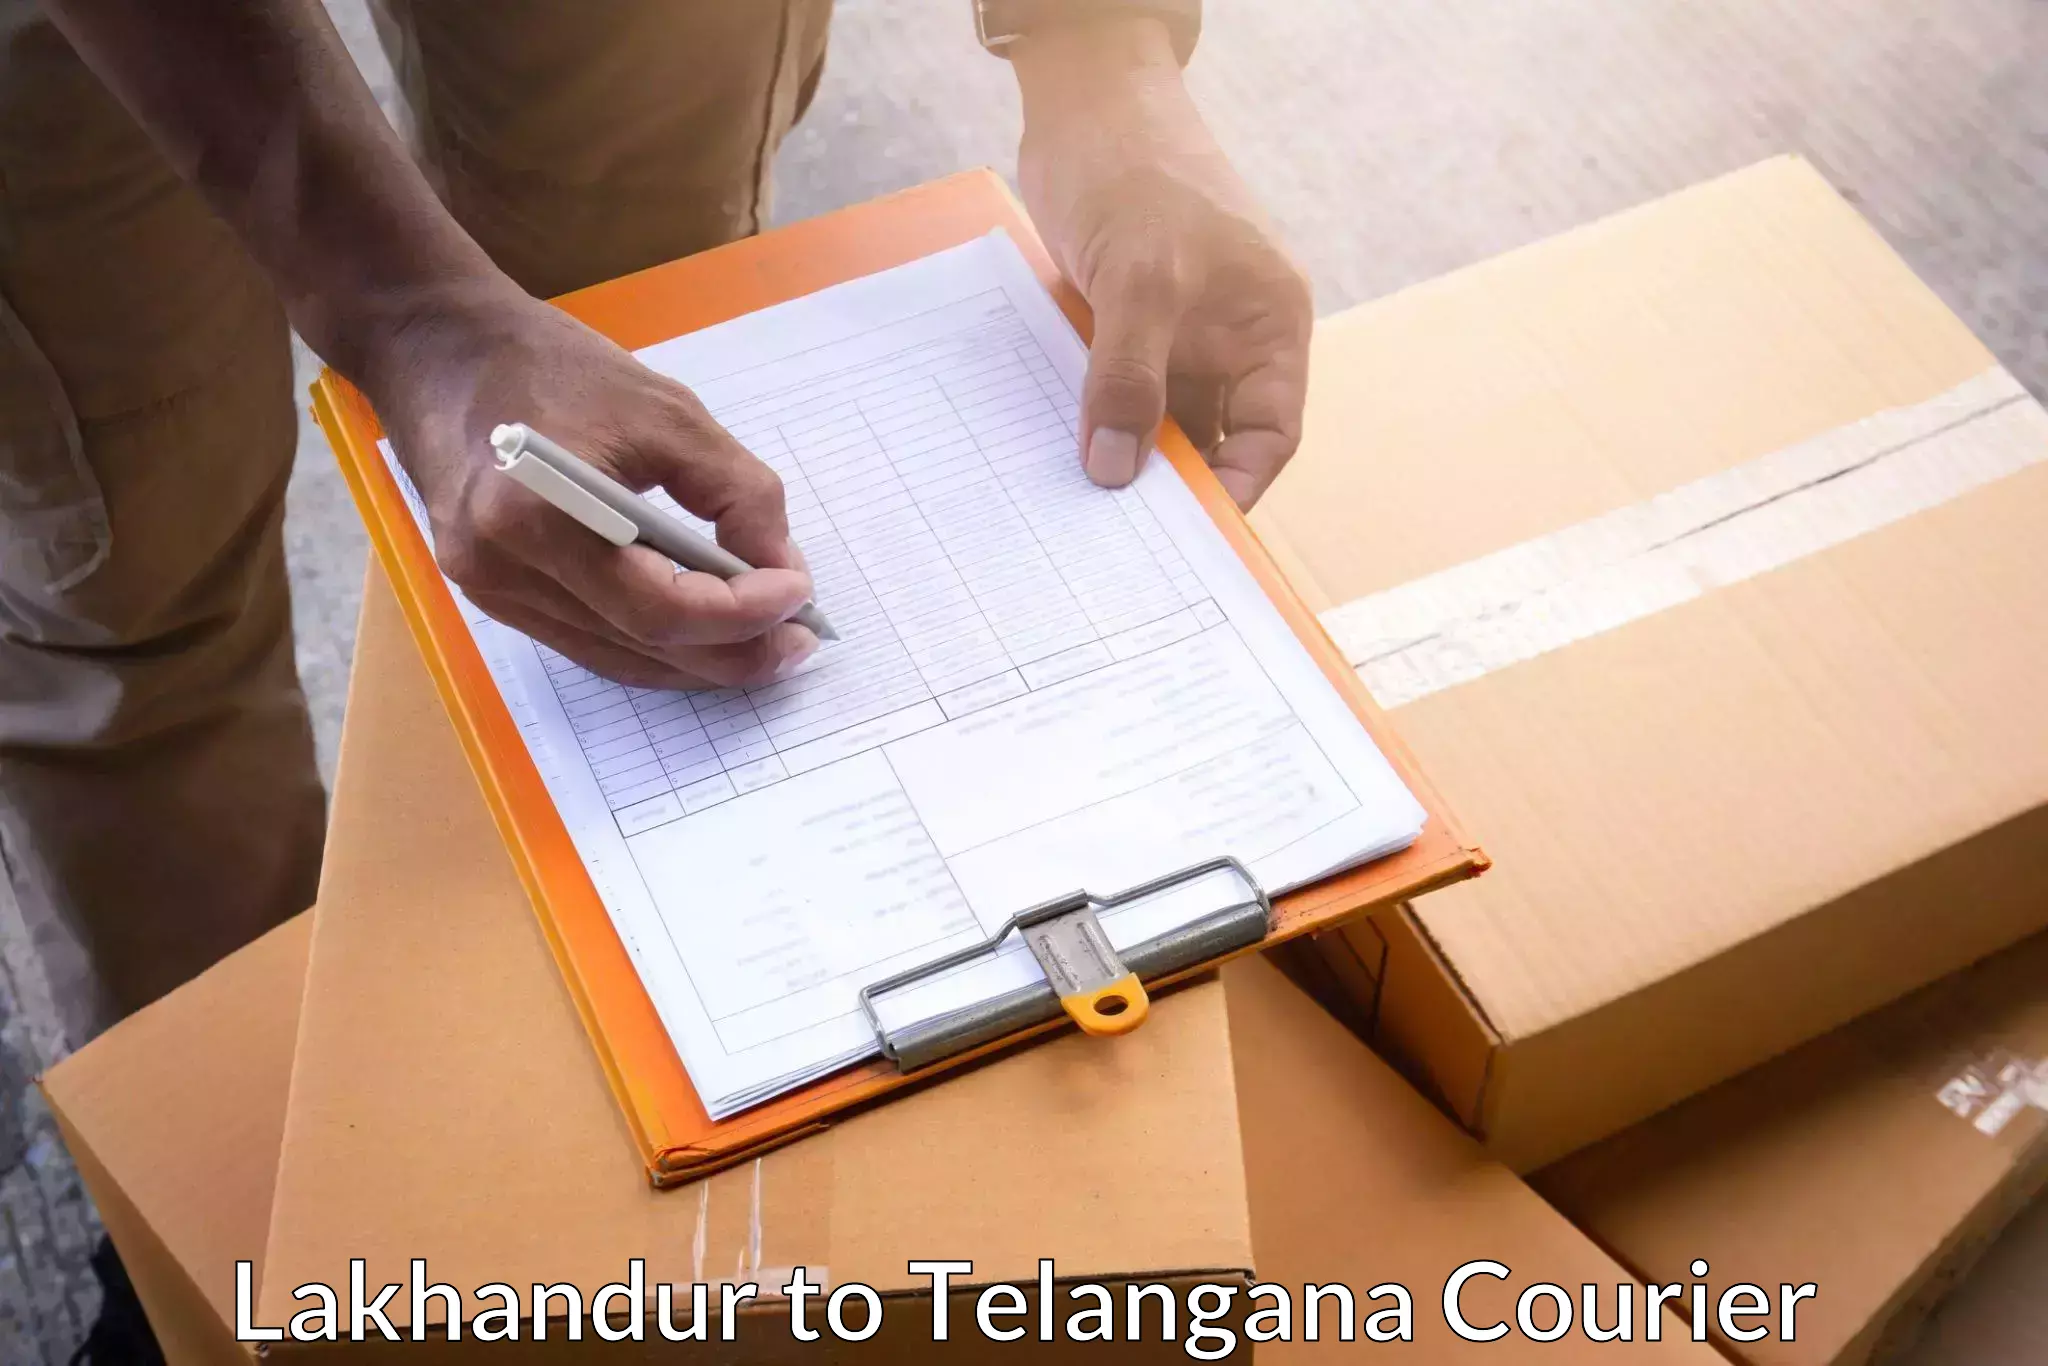 Urgent courier needs Lakhandur to Bommalaramaram